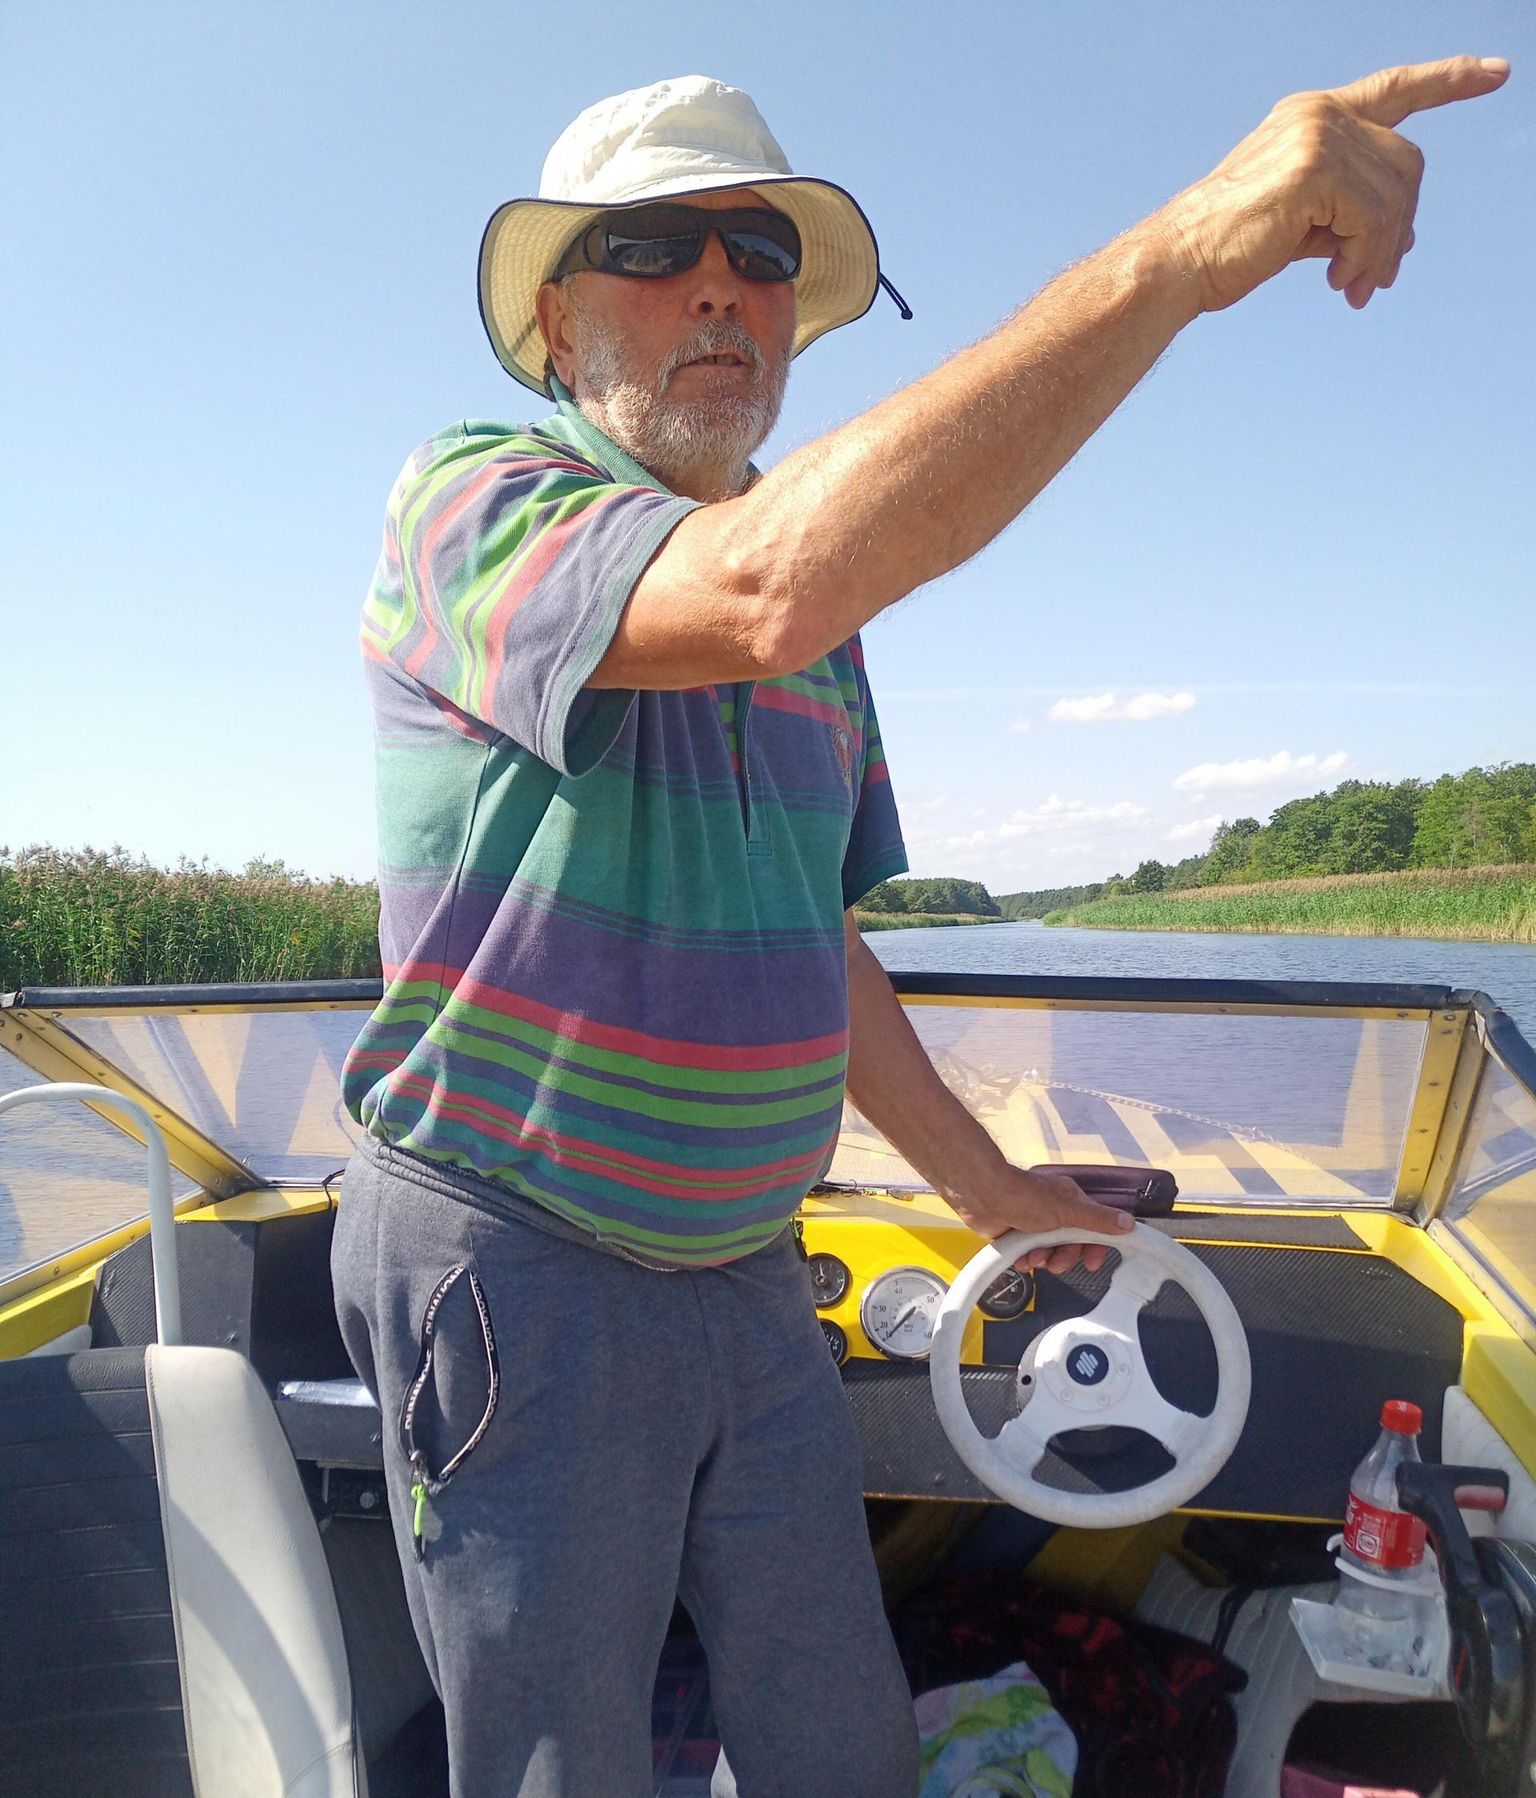 Eiki Eriste käib oma mootorpaadiga kalastamas valdavalt kitsukesel Audru jõel ja Pärnu lahel.

 